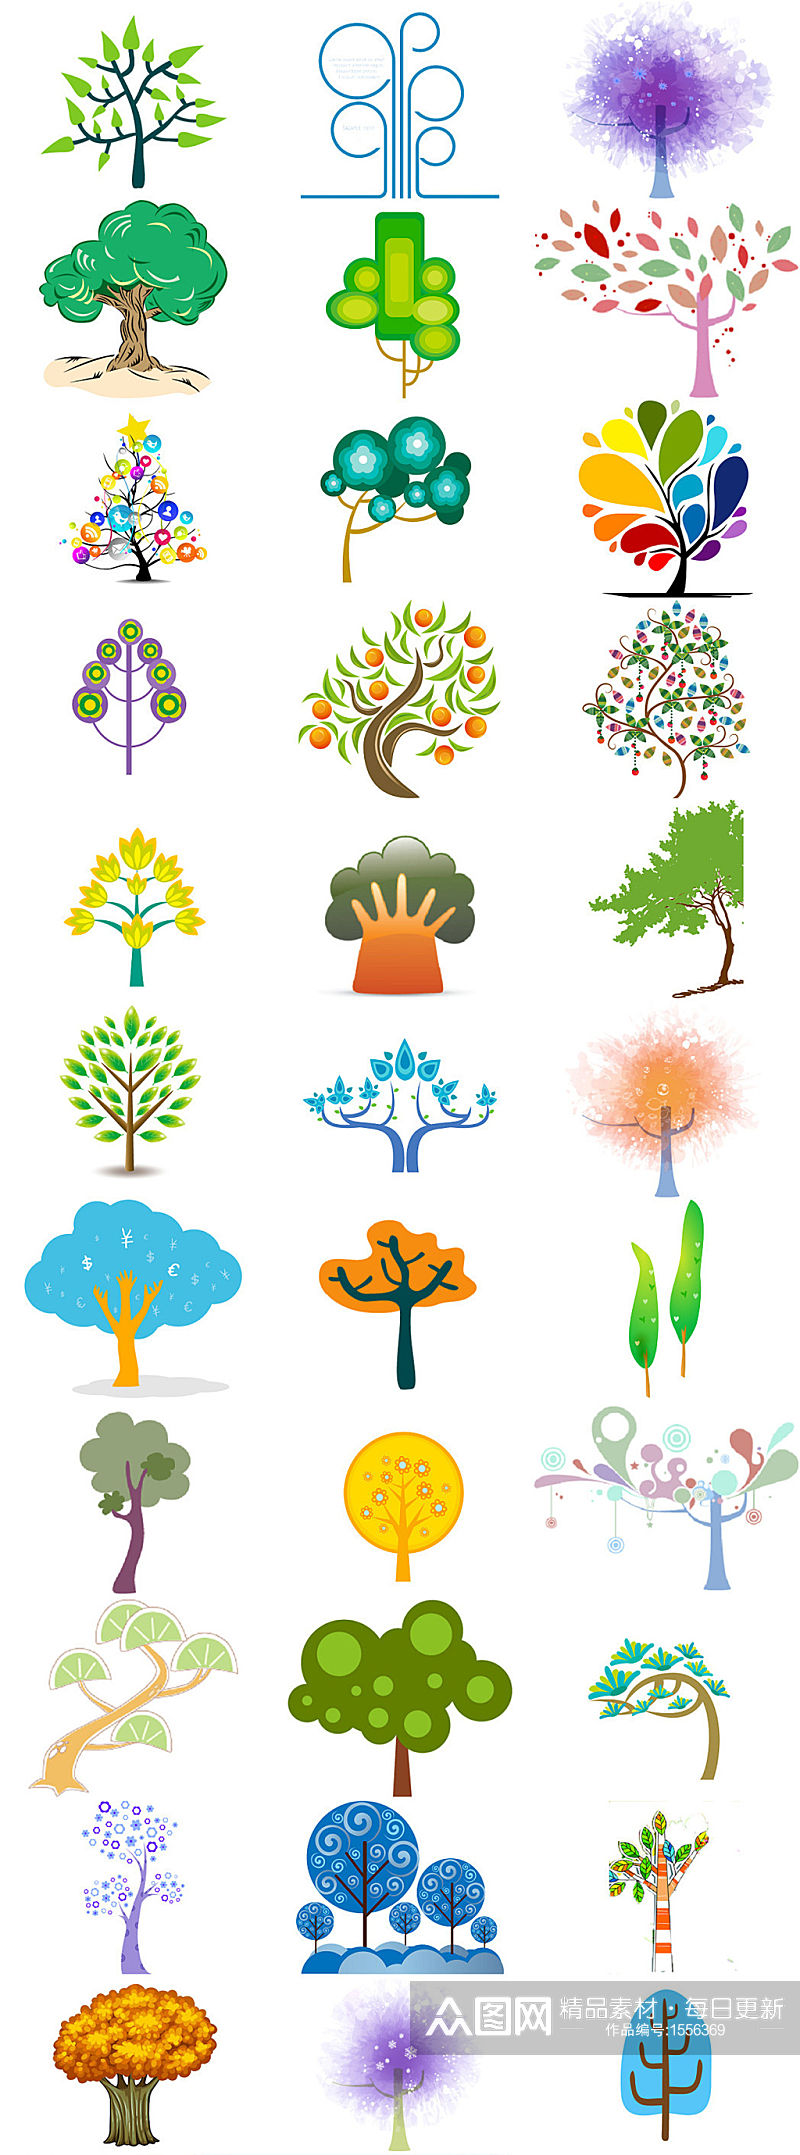 多款创意卡通树木免抠海报设计素材素材